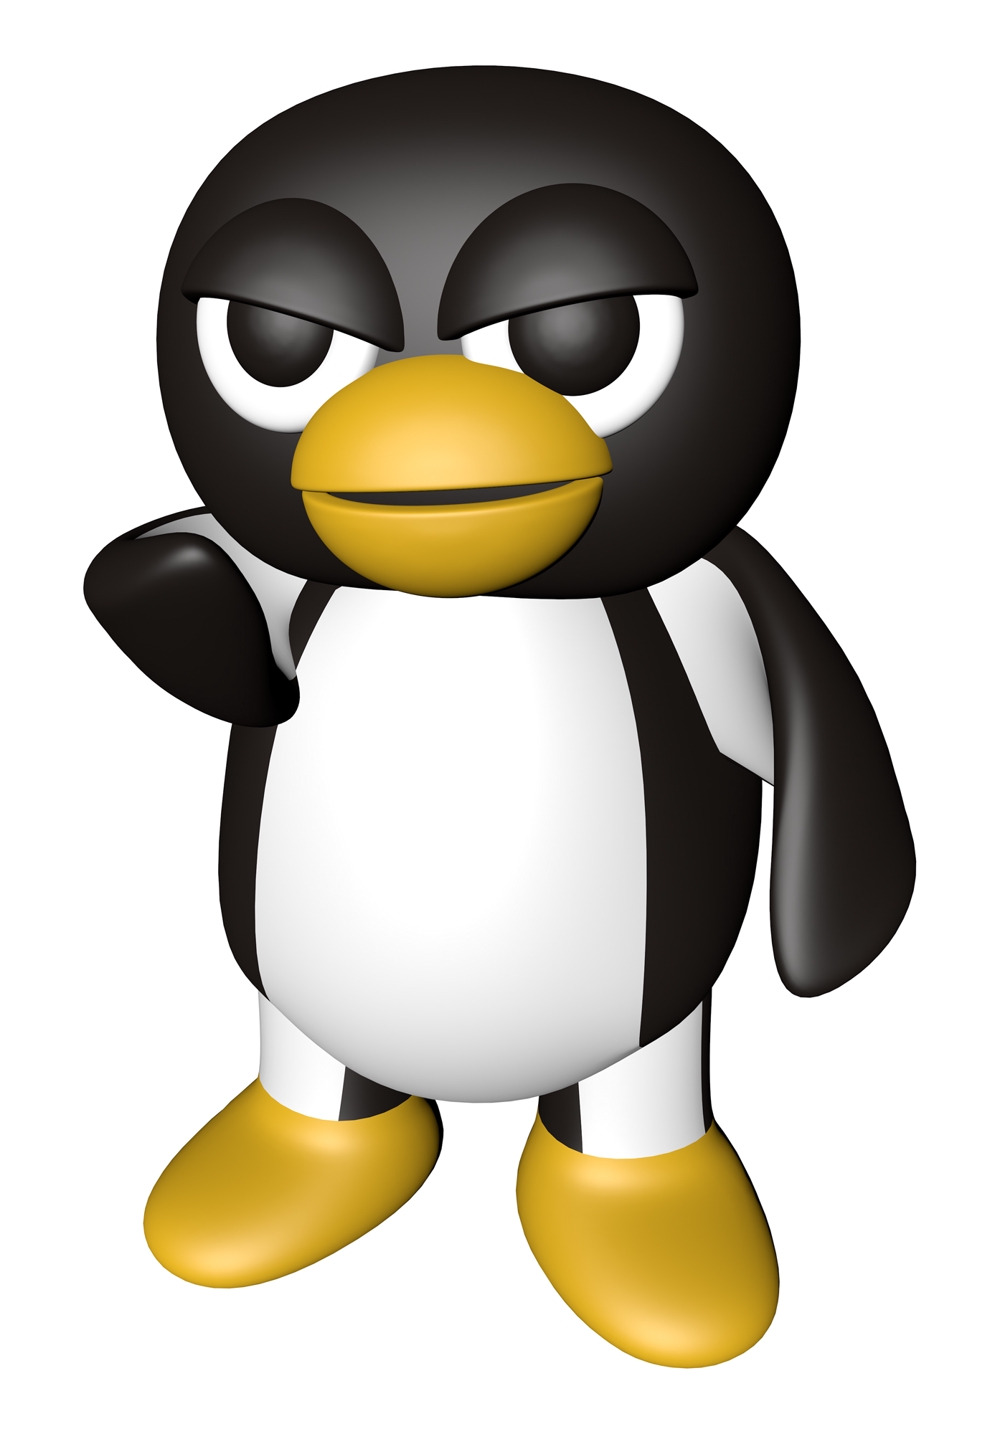 Linuxのキャラクター「タックス」のアレンジデザインを作成